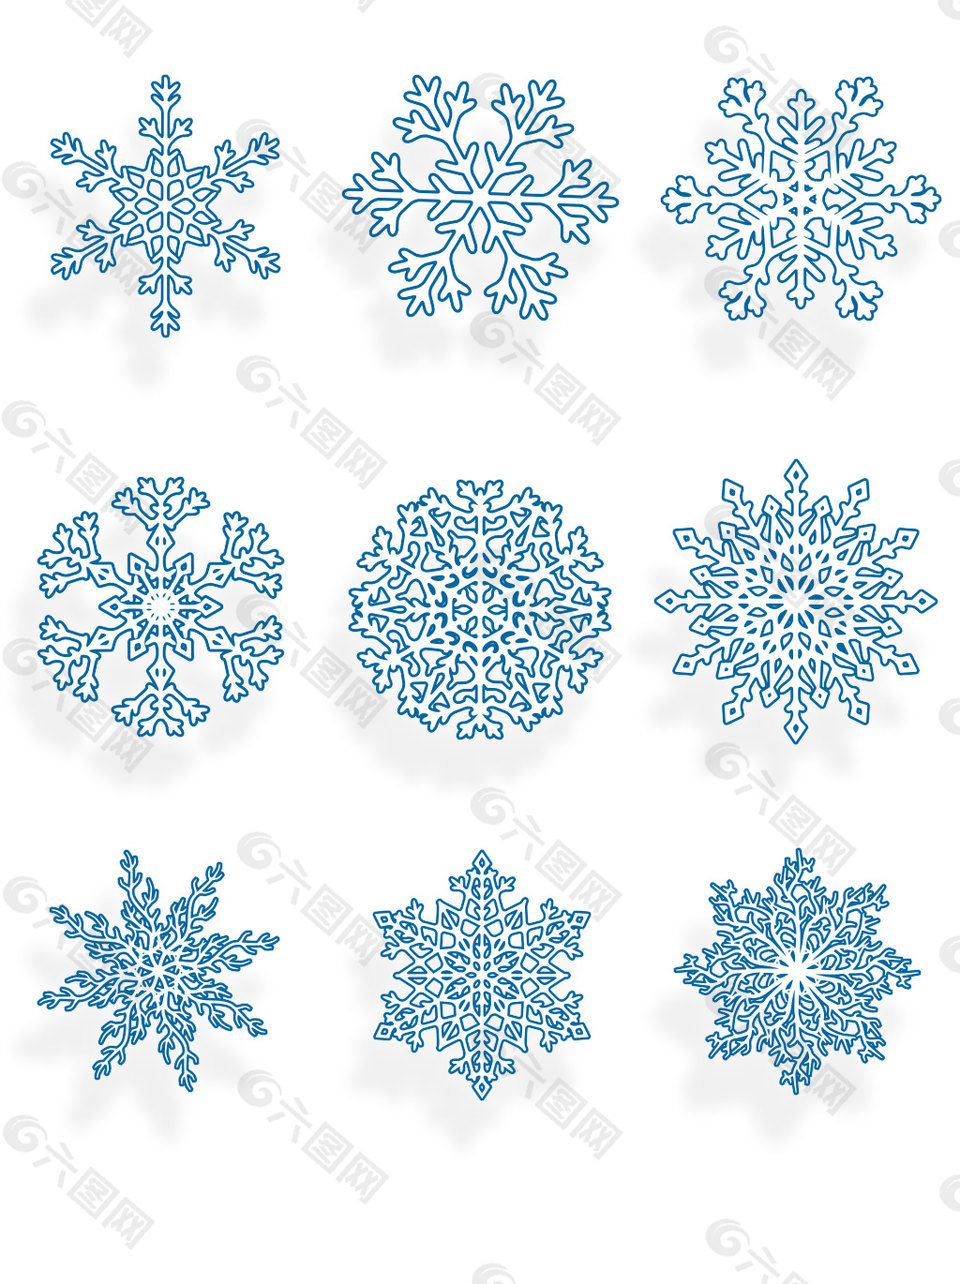 蓝色镂空雪花元素矢量装饰图案冬日元素集合